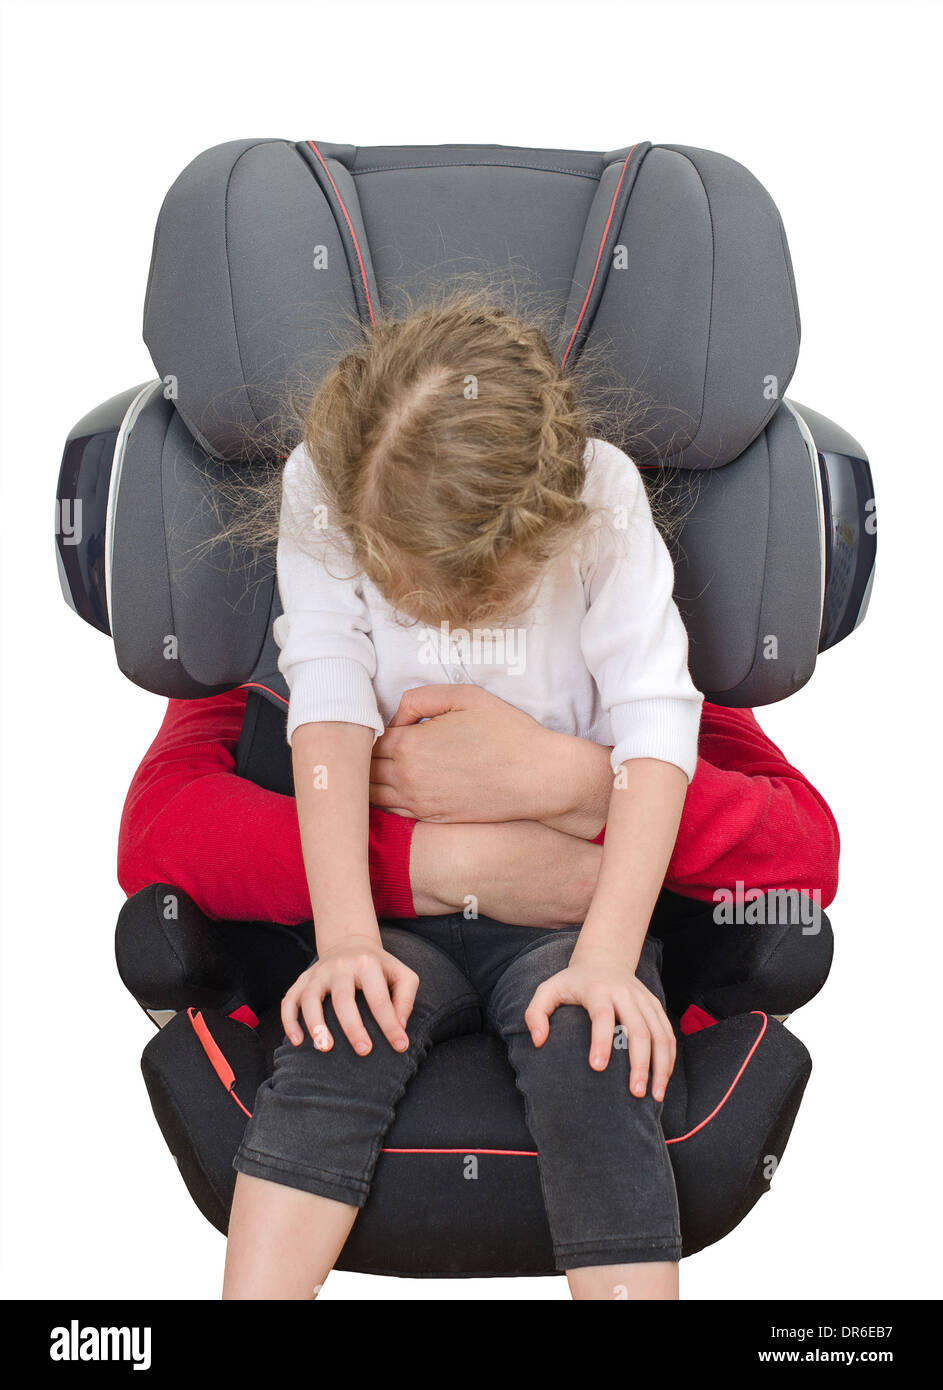 Kind-Sicherheit-Sitzkonzept. Isoliert auf weiss. Stockfoto